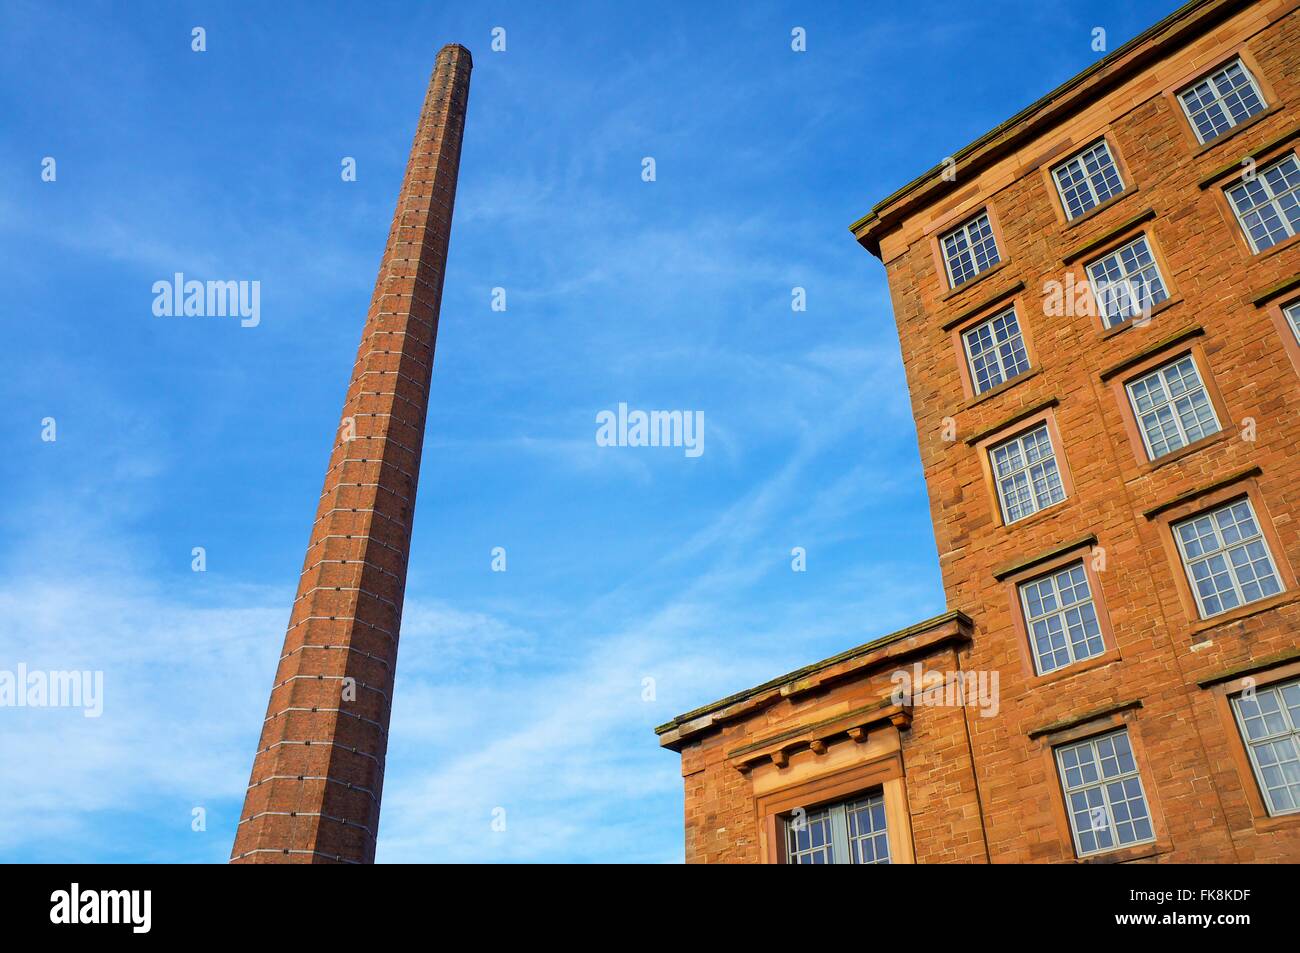 La cheminée de Dixon. 290 pieds de hauteur de cheminée ancienne usine textile. Shaddon Mill, Junction Street, Shaddongate, Carlisle, Cumbria. Banque D'Images